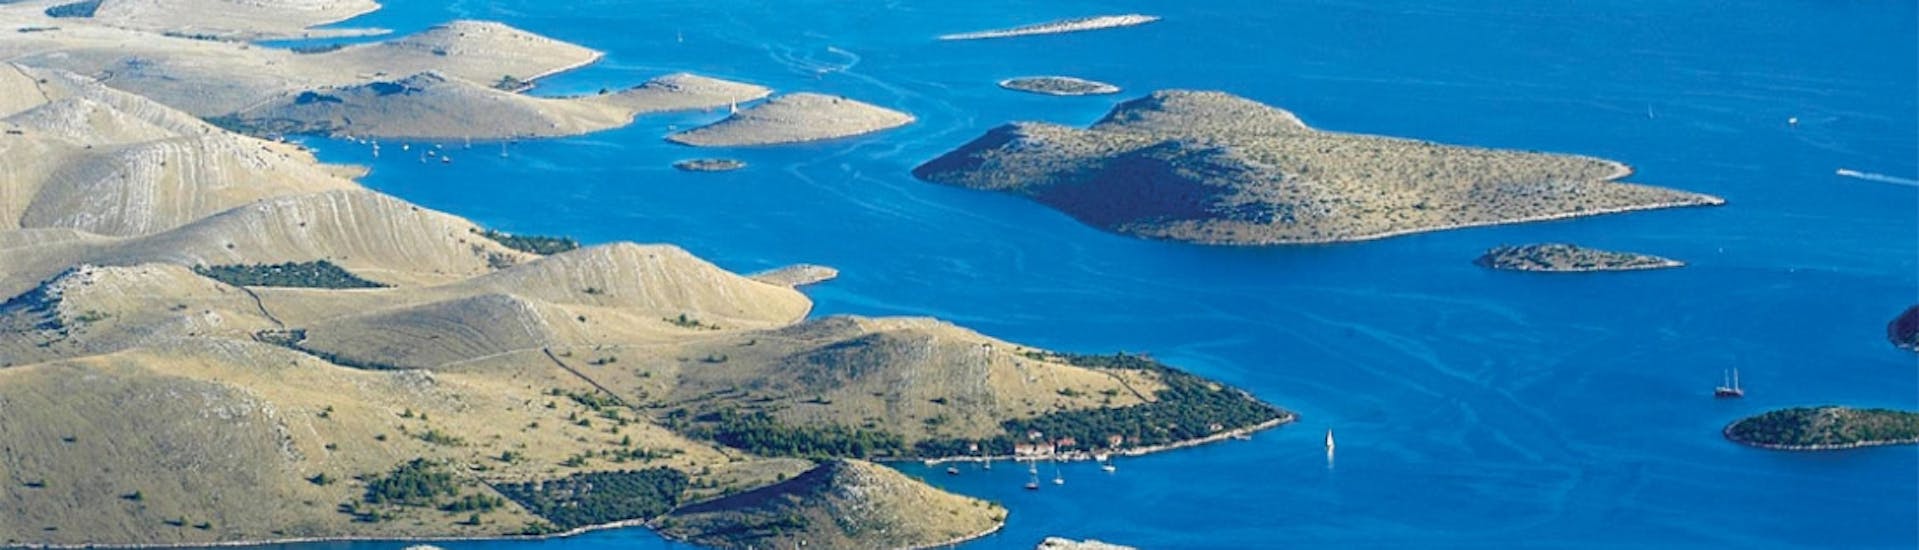 Foto dell'arcipelago nel Parco Nazionale di Kornati, che potrà essere visitato durante la gita in barca al Parco Nazionale di Kornati da Sebenico e Solaris offerta da Avalon Yachting.